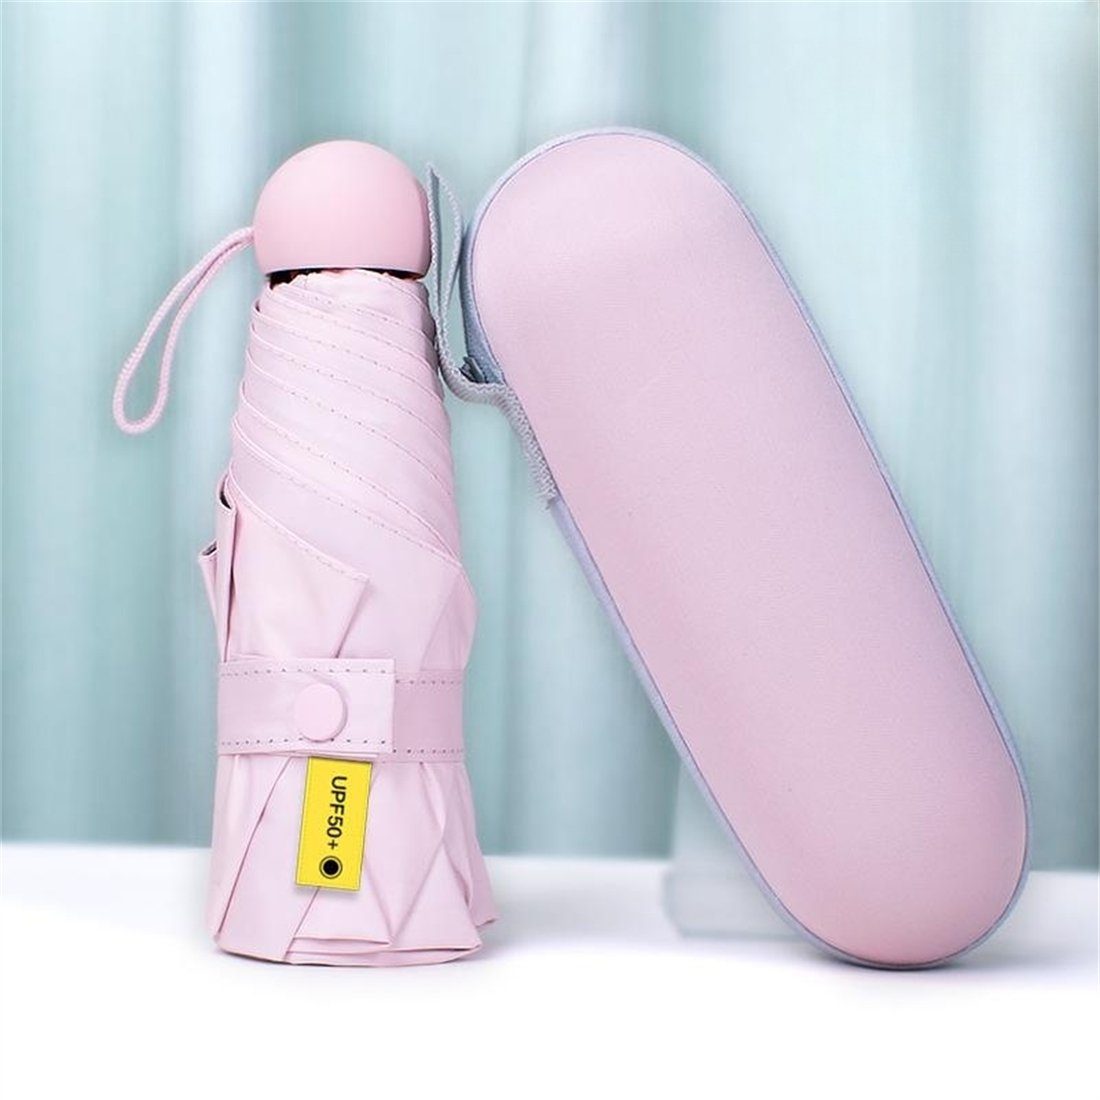 YOOdy~ Taschenregenschirm Taschenschirme damen sonnenschirm Mini UV-Schutz Rosa Regen winzig klein schützt unterwegs und für Sonnenschutz für Regenschirm, vor Sonne